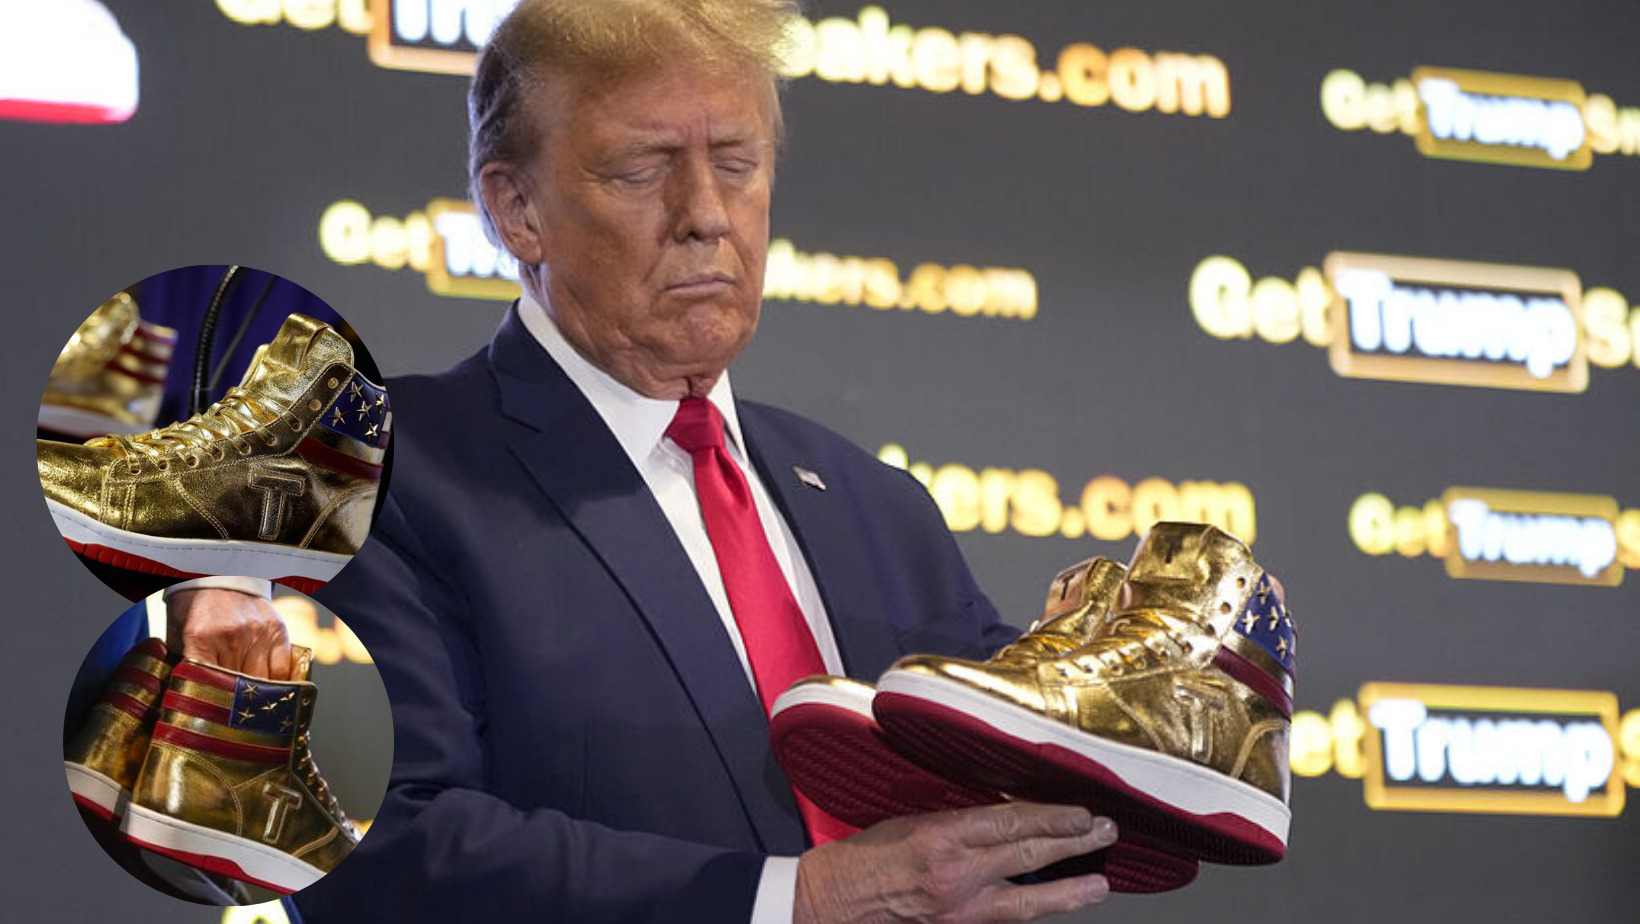 Donald Trump lanza su marca de zapatos deportivos “Never Surrender”